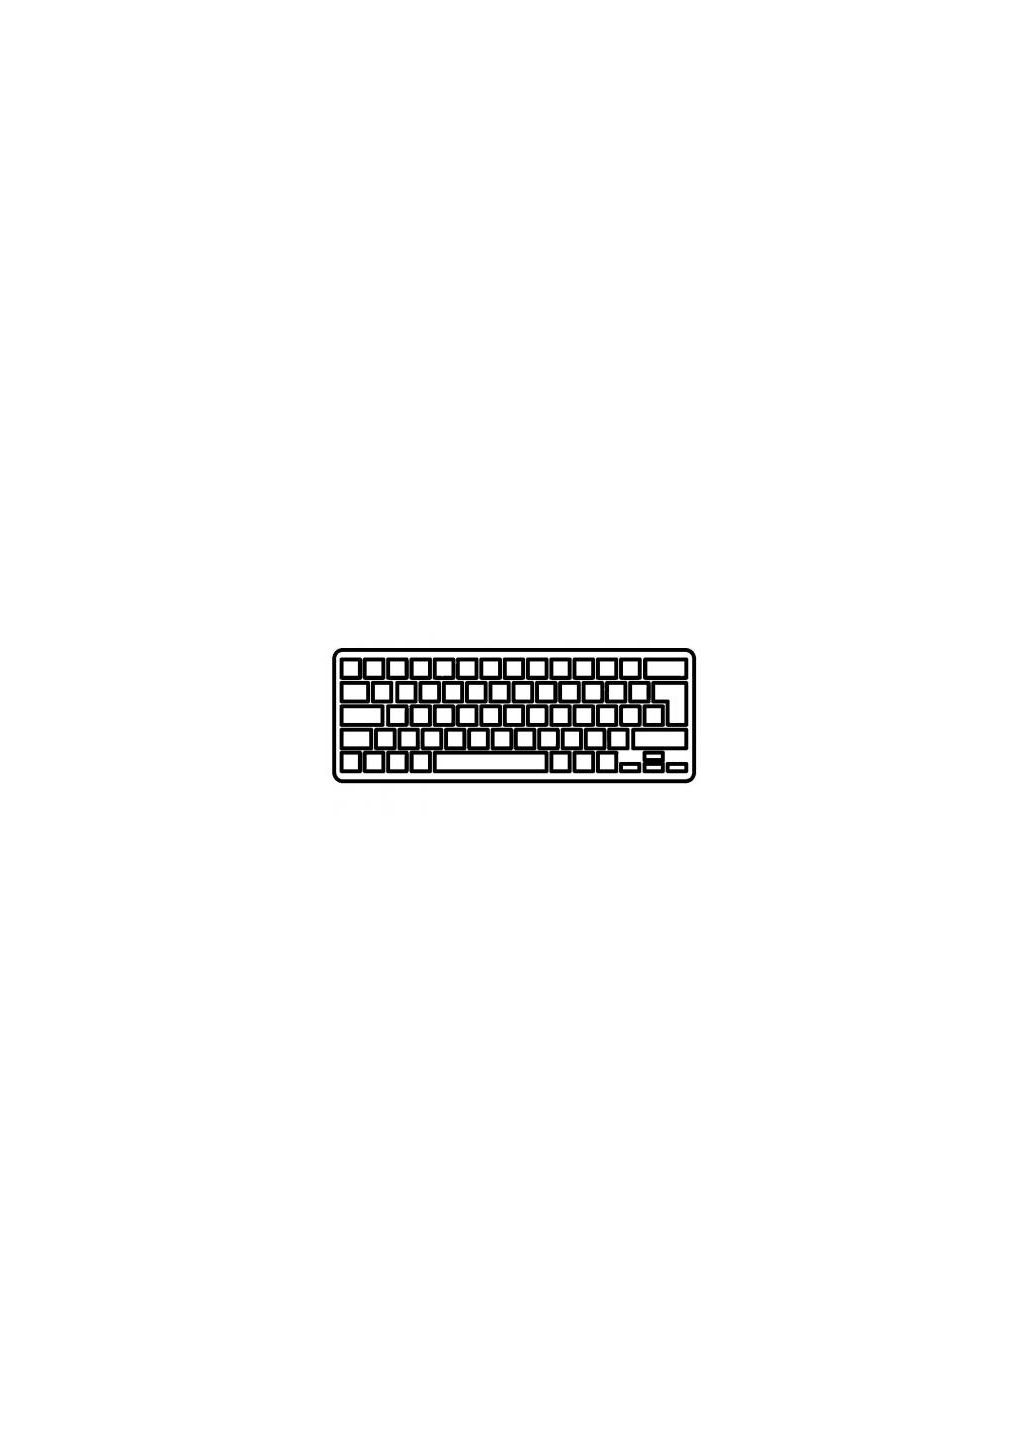 Клавиатура ноутбука Mini 2101000 Series белая UA (A43526) HP mini 210-1000 series белая ua (276707620)